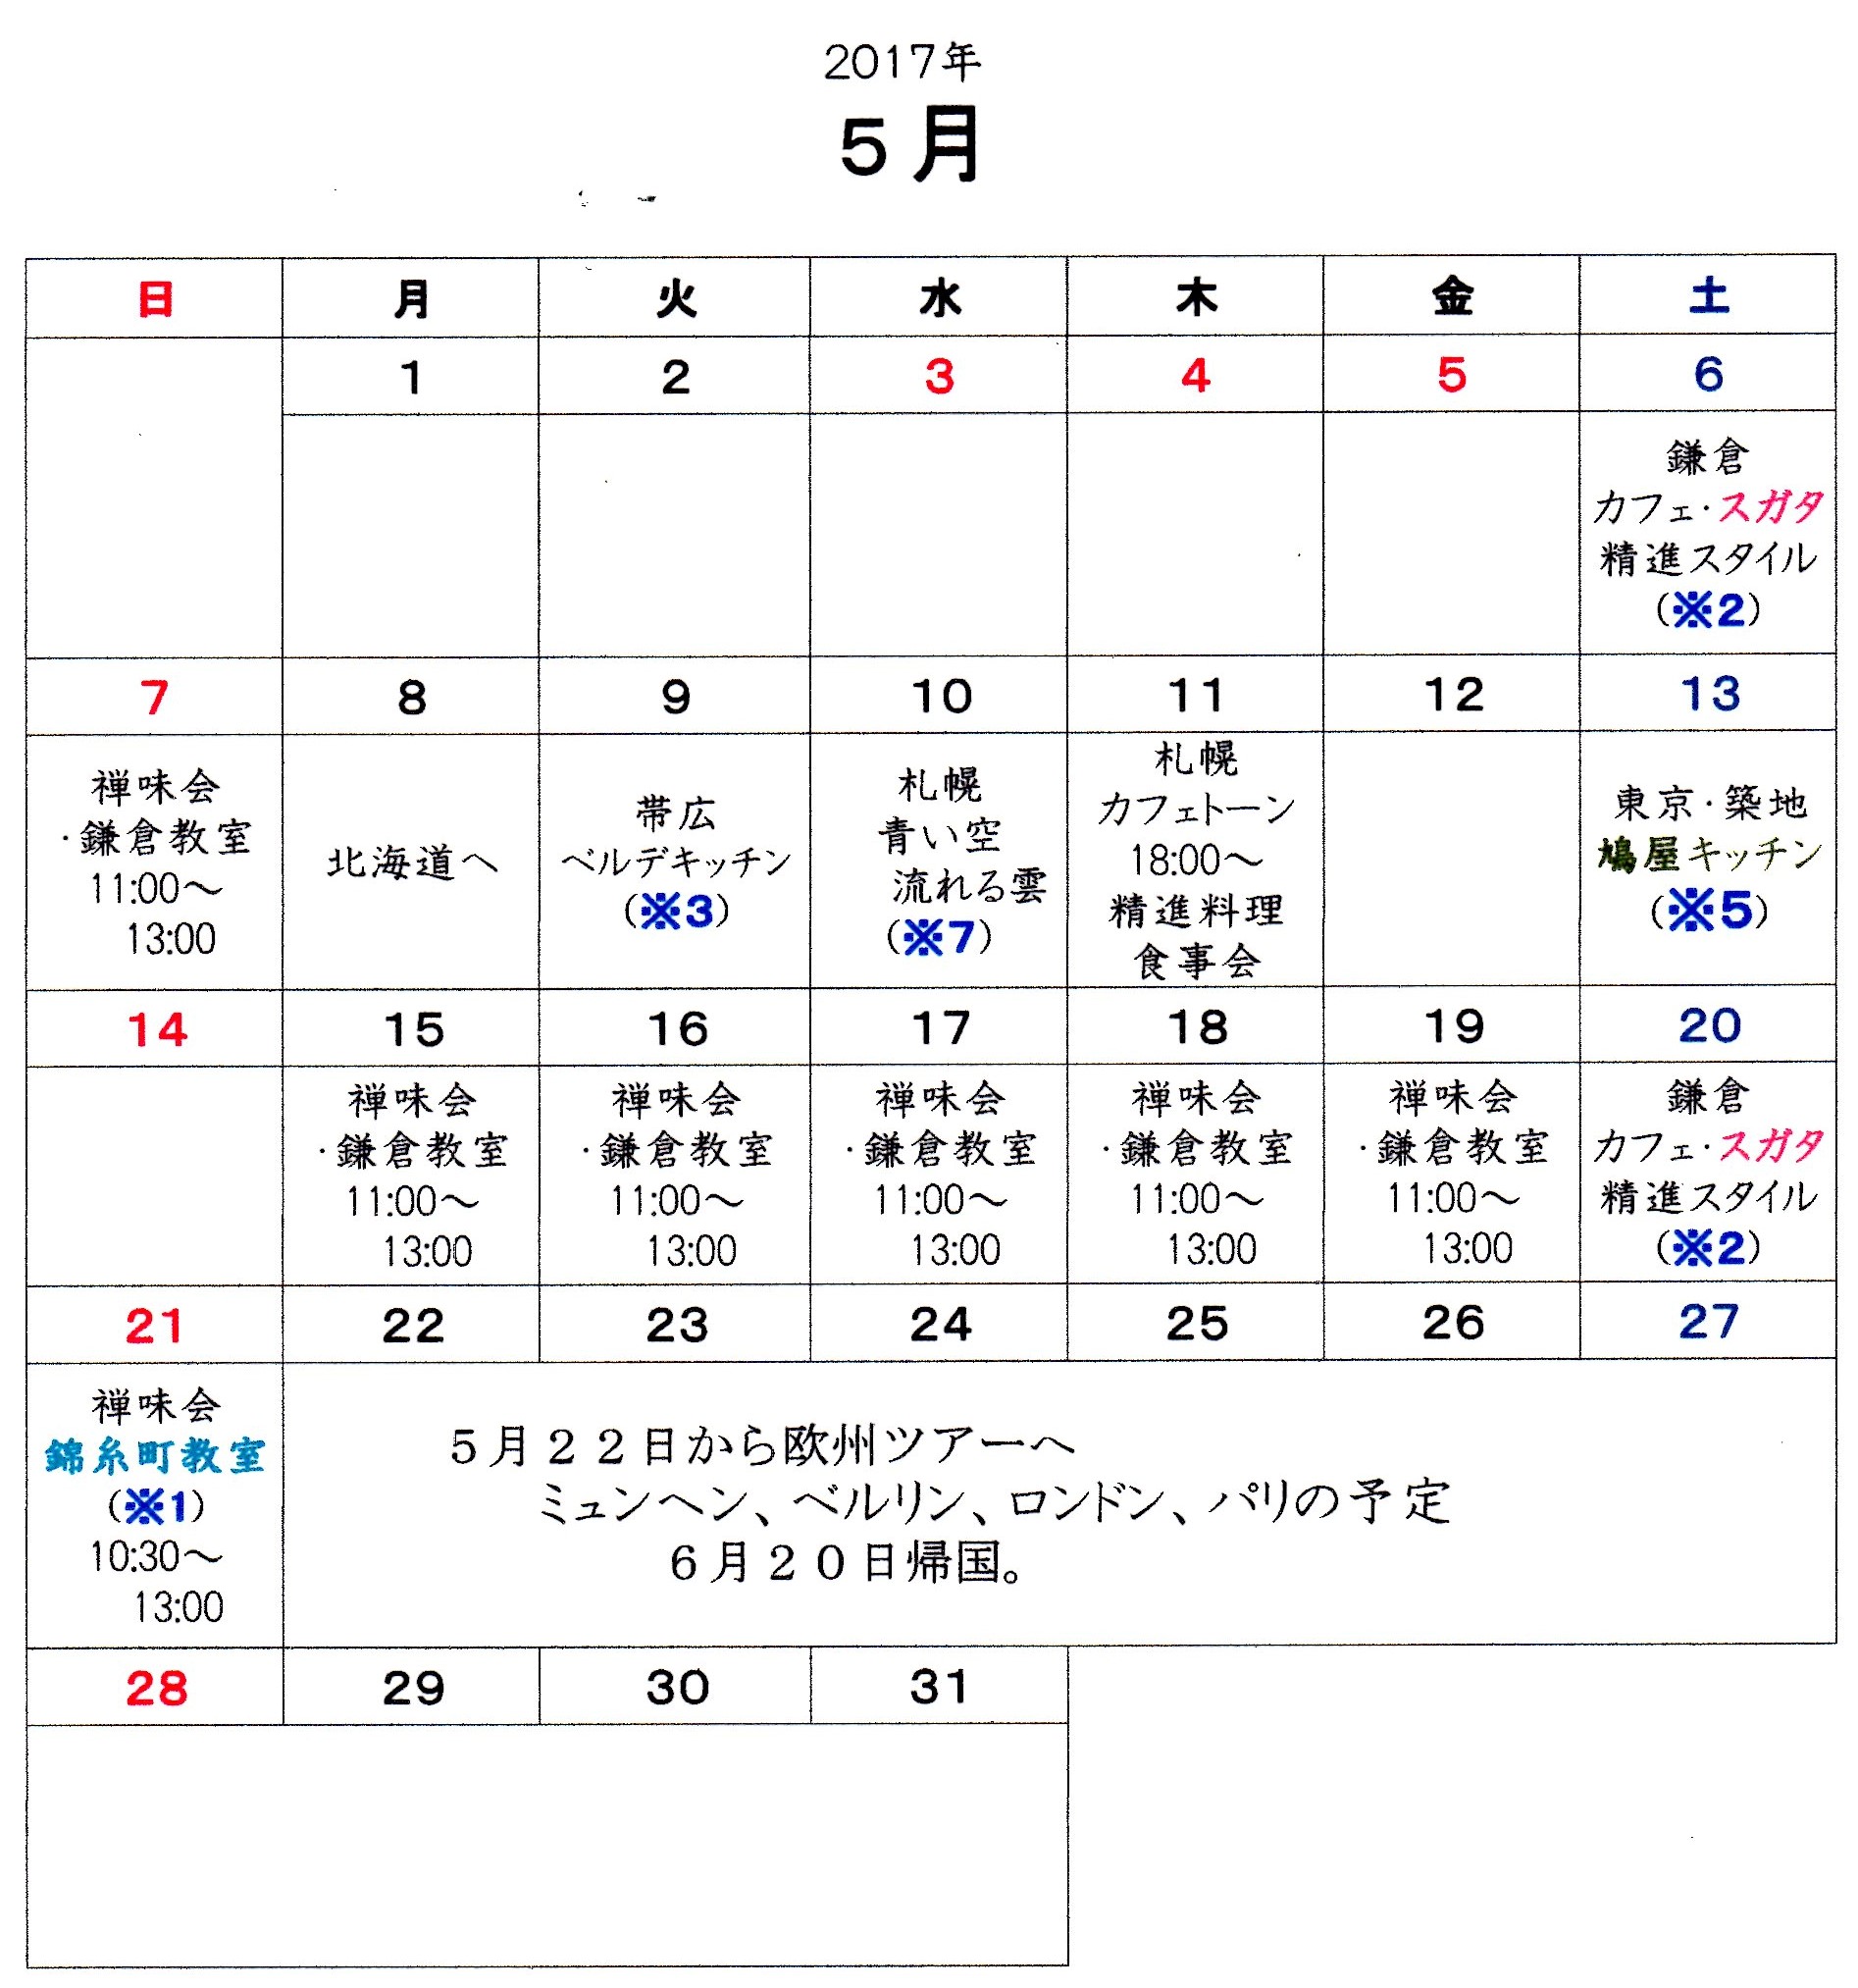 過去の教室カレンダー 2017年 トップページ 鎌倉不識庵